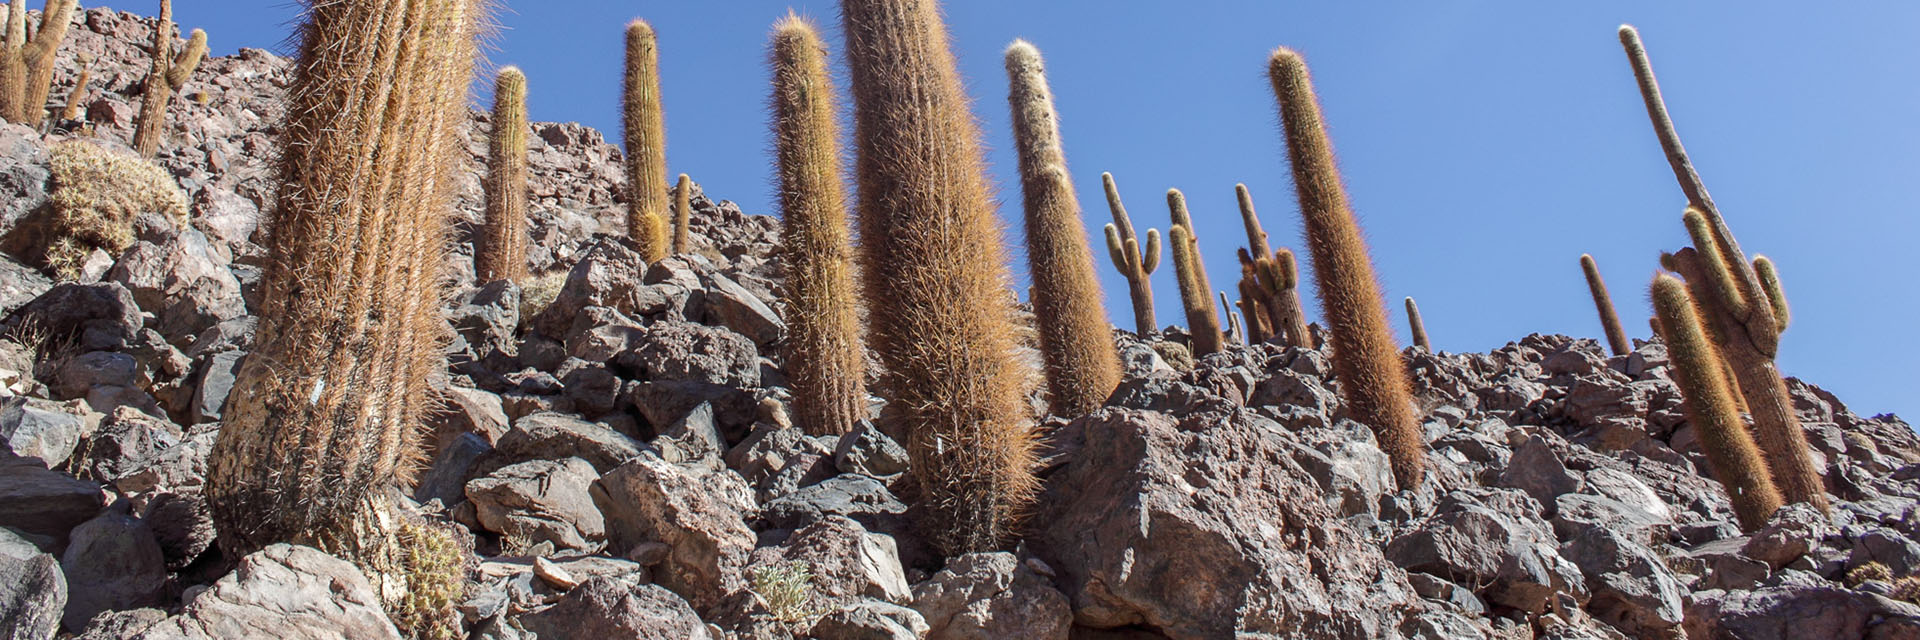 atacama trilha inca cactus gigante